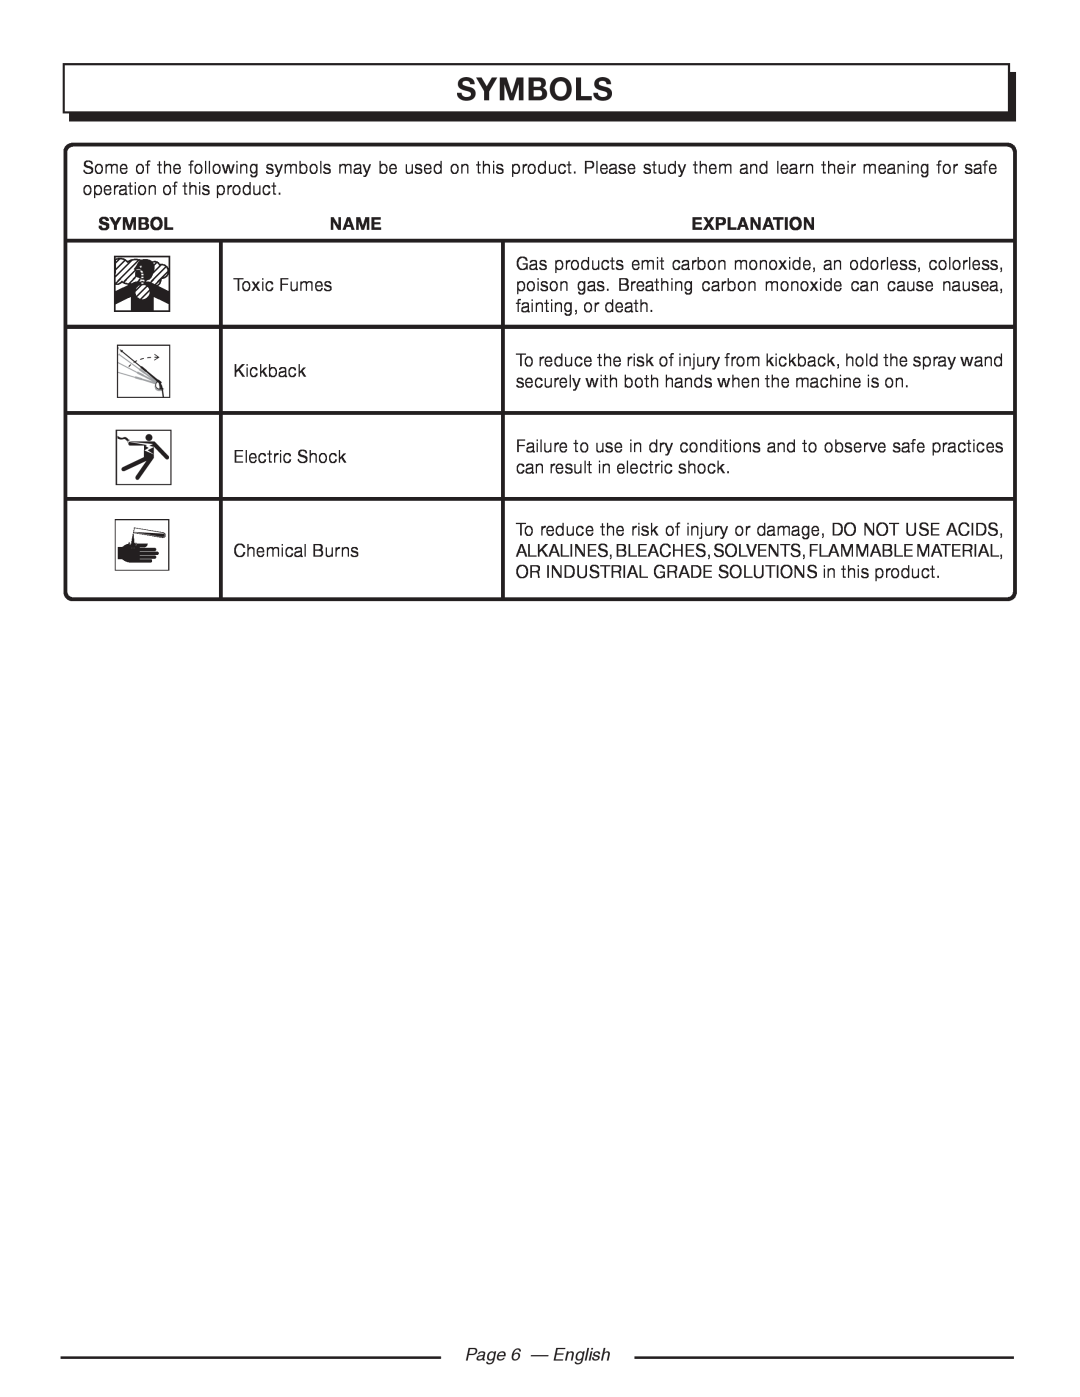 Homelite UT80993 manuel dutilisation Symbols, Name, Explanation, Page 6 - English 